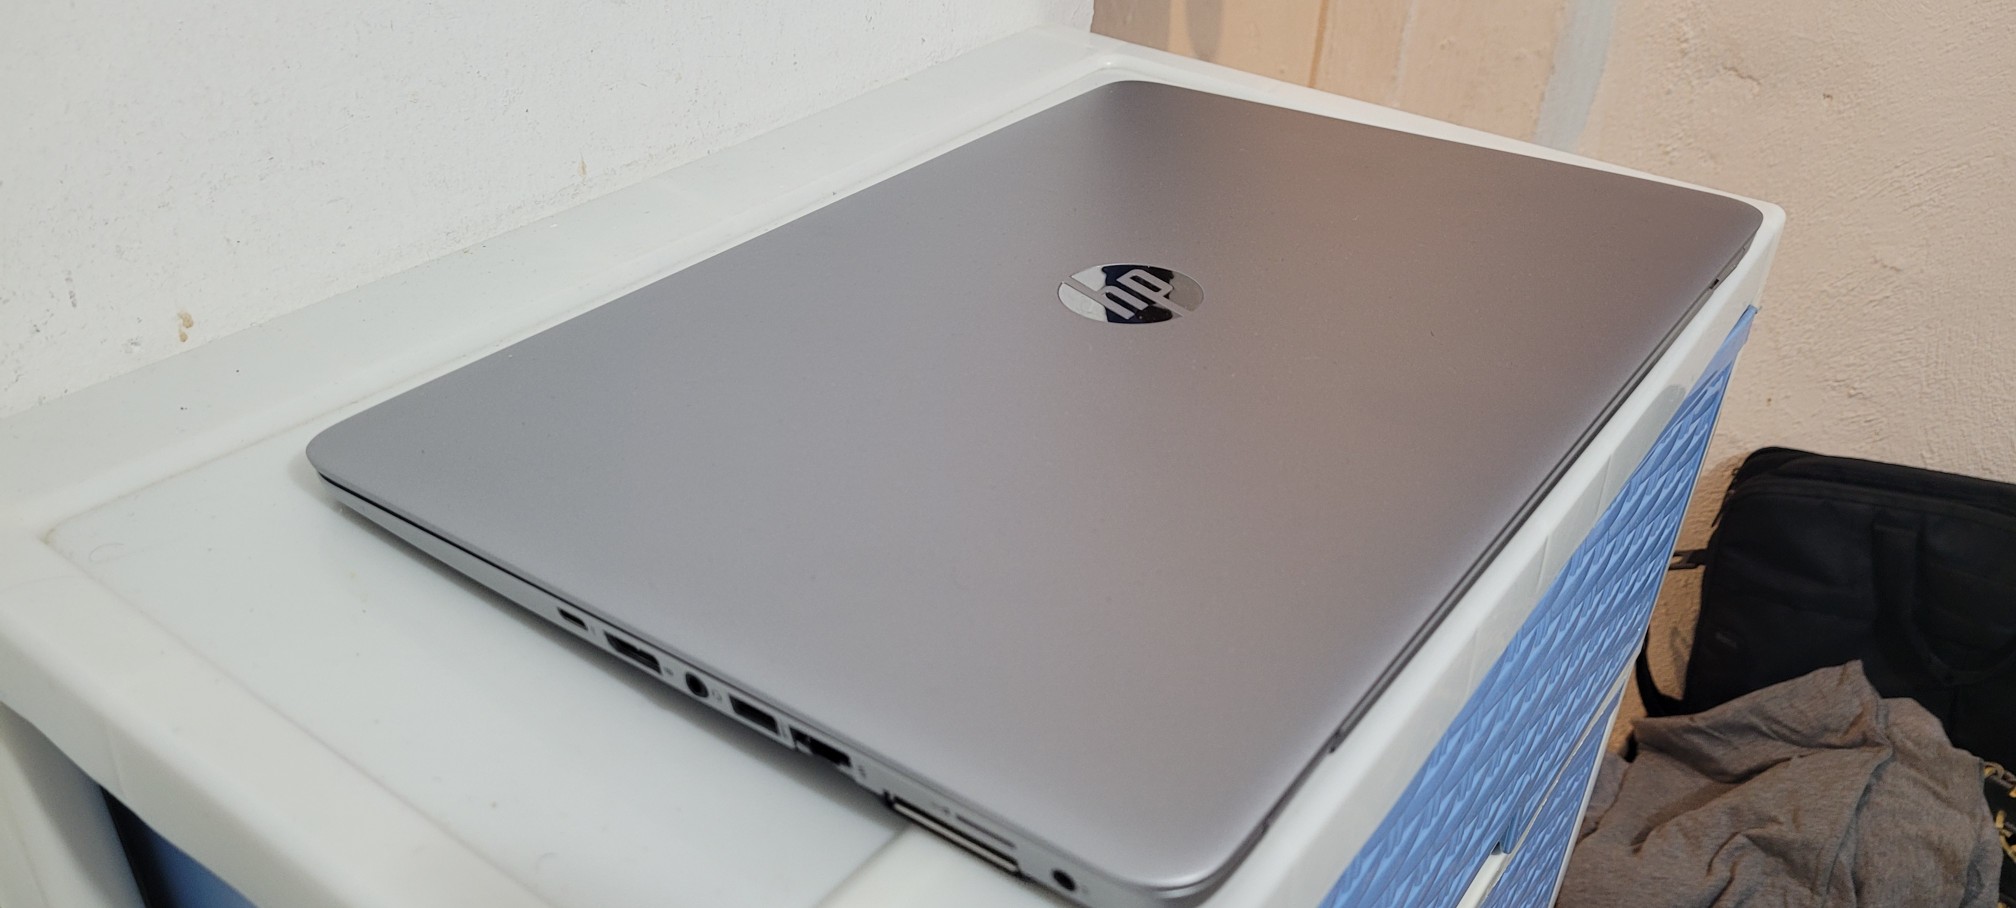 computadoras y laptops - Laptop Touch hp Core i5 7ma Gen Ram 8gb ddr4 Disco 128gb SSD Y 320gb Fulk 2